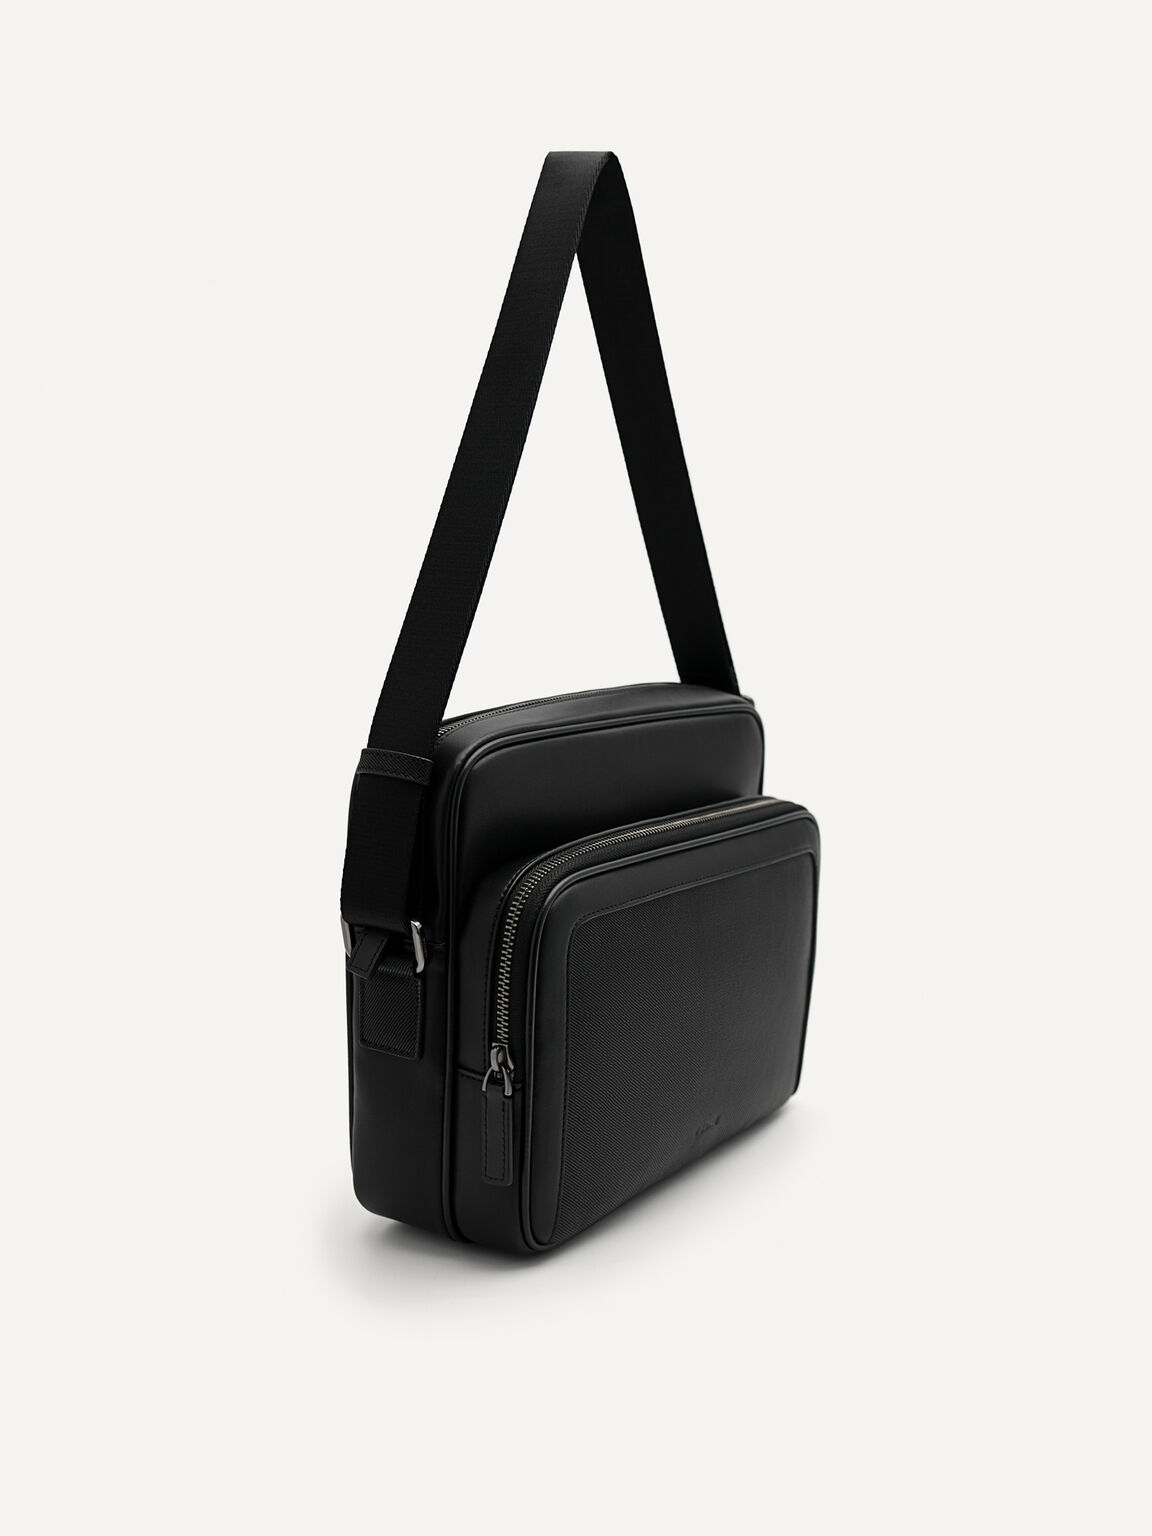 Porte Messenger Bag, Black, hi-res